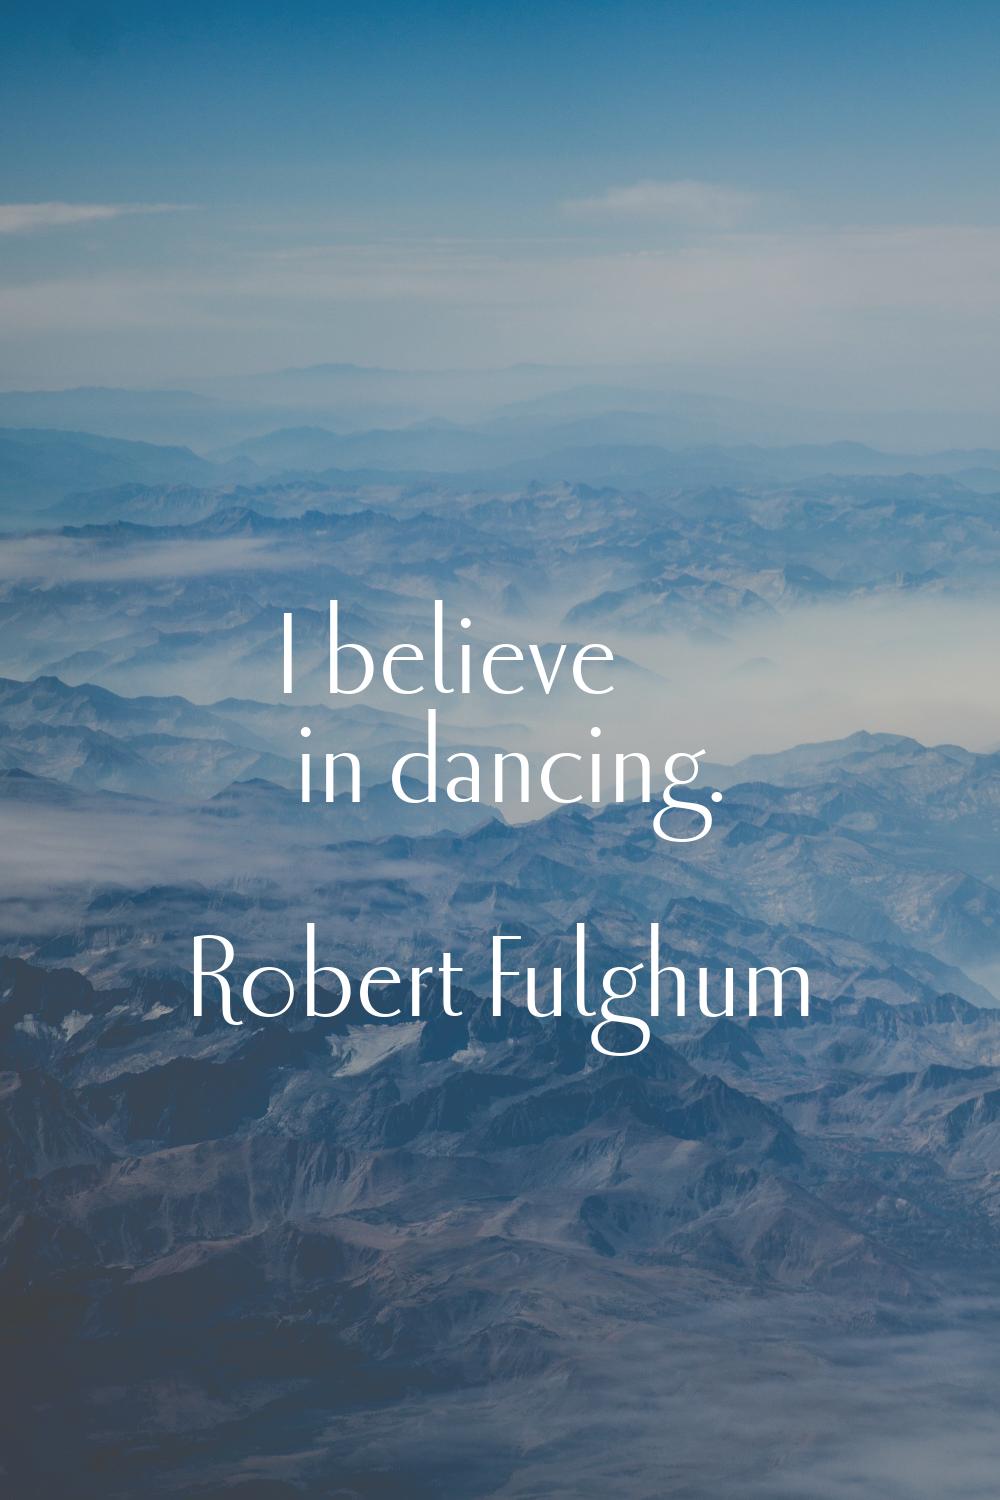 I believe in dancing.